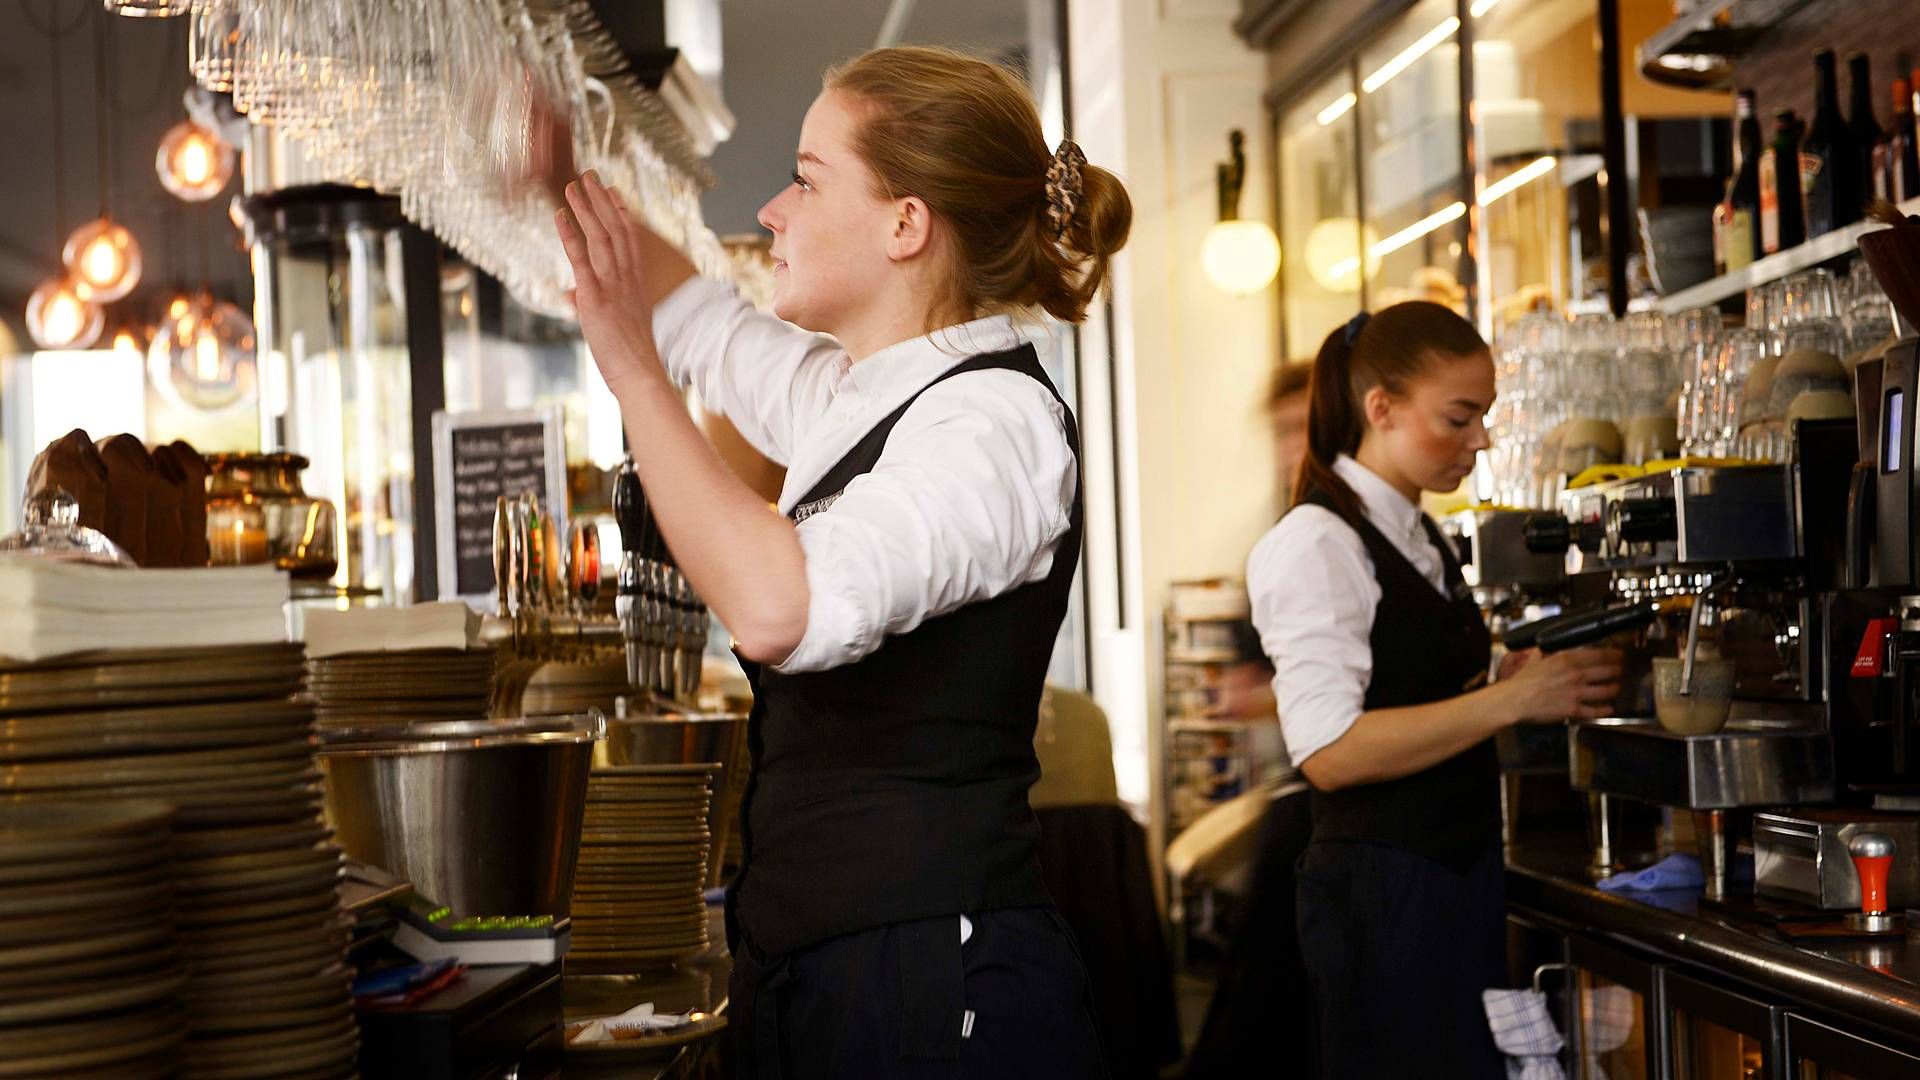 Horesta varetager som brancheorganisation blandt andet restauranternes interesser. | Foto: Olivia Loftlund